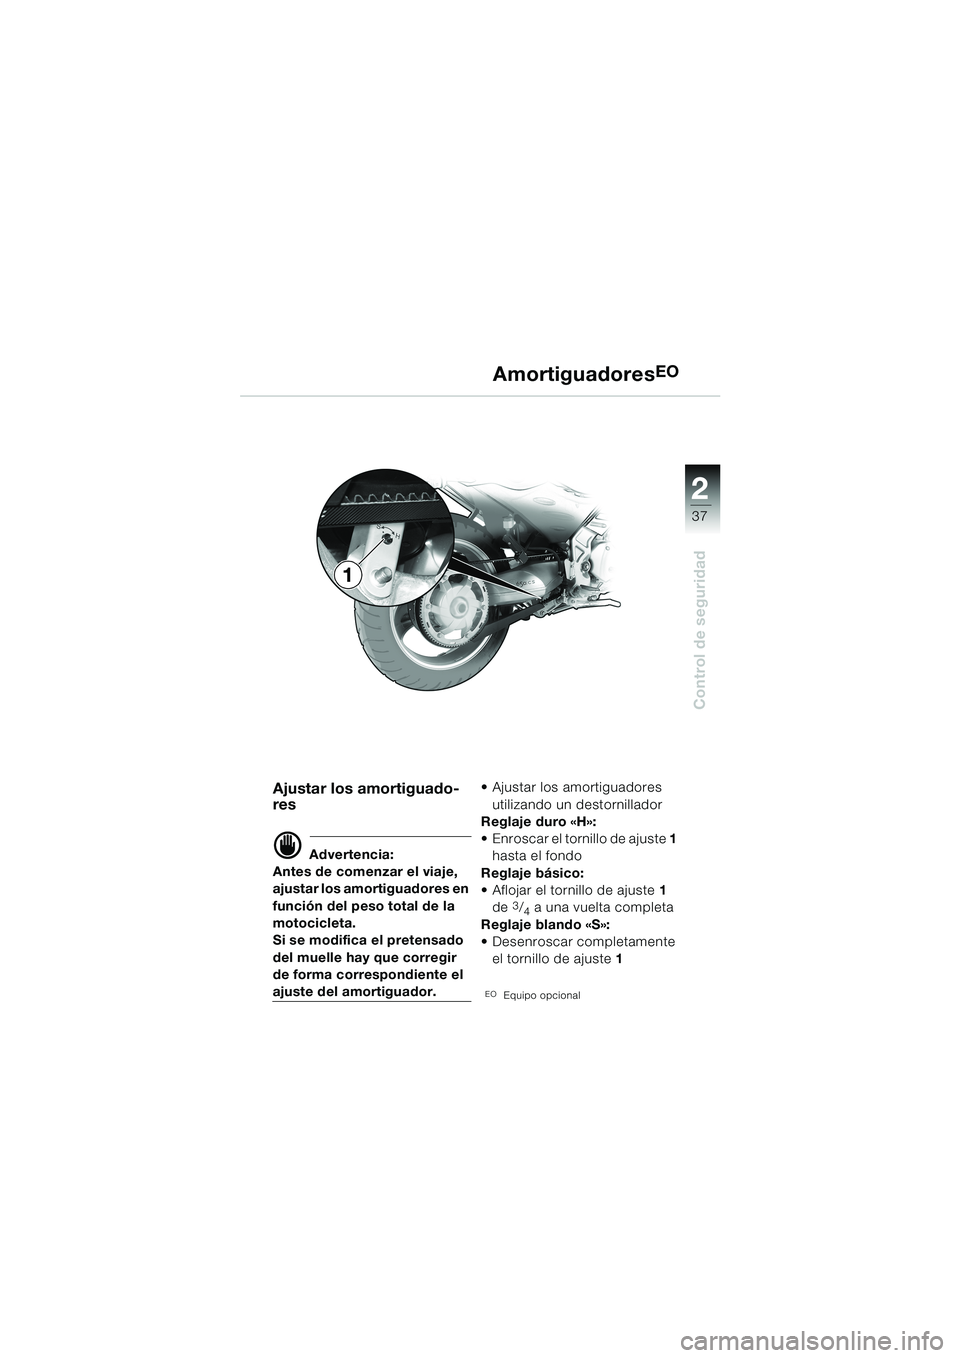 BMW MOTORRAD F 650 CS 2003  Manual de instrucciones (in Spanish) 1
37
Control de seguridad
2
AmortiguadoresEO
Ajustar los amortiguado-
res
d Advertencia:
Antes de comenzar el viaje, 
ajustar los amortiguadores en 
función del peso total de la 
motocicleta.
Si se m